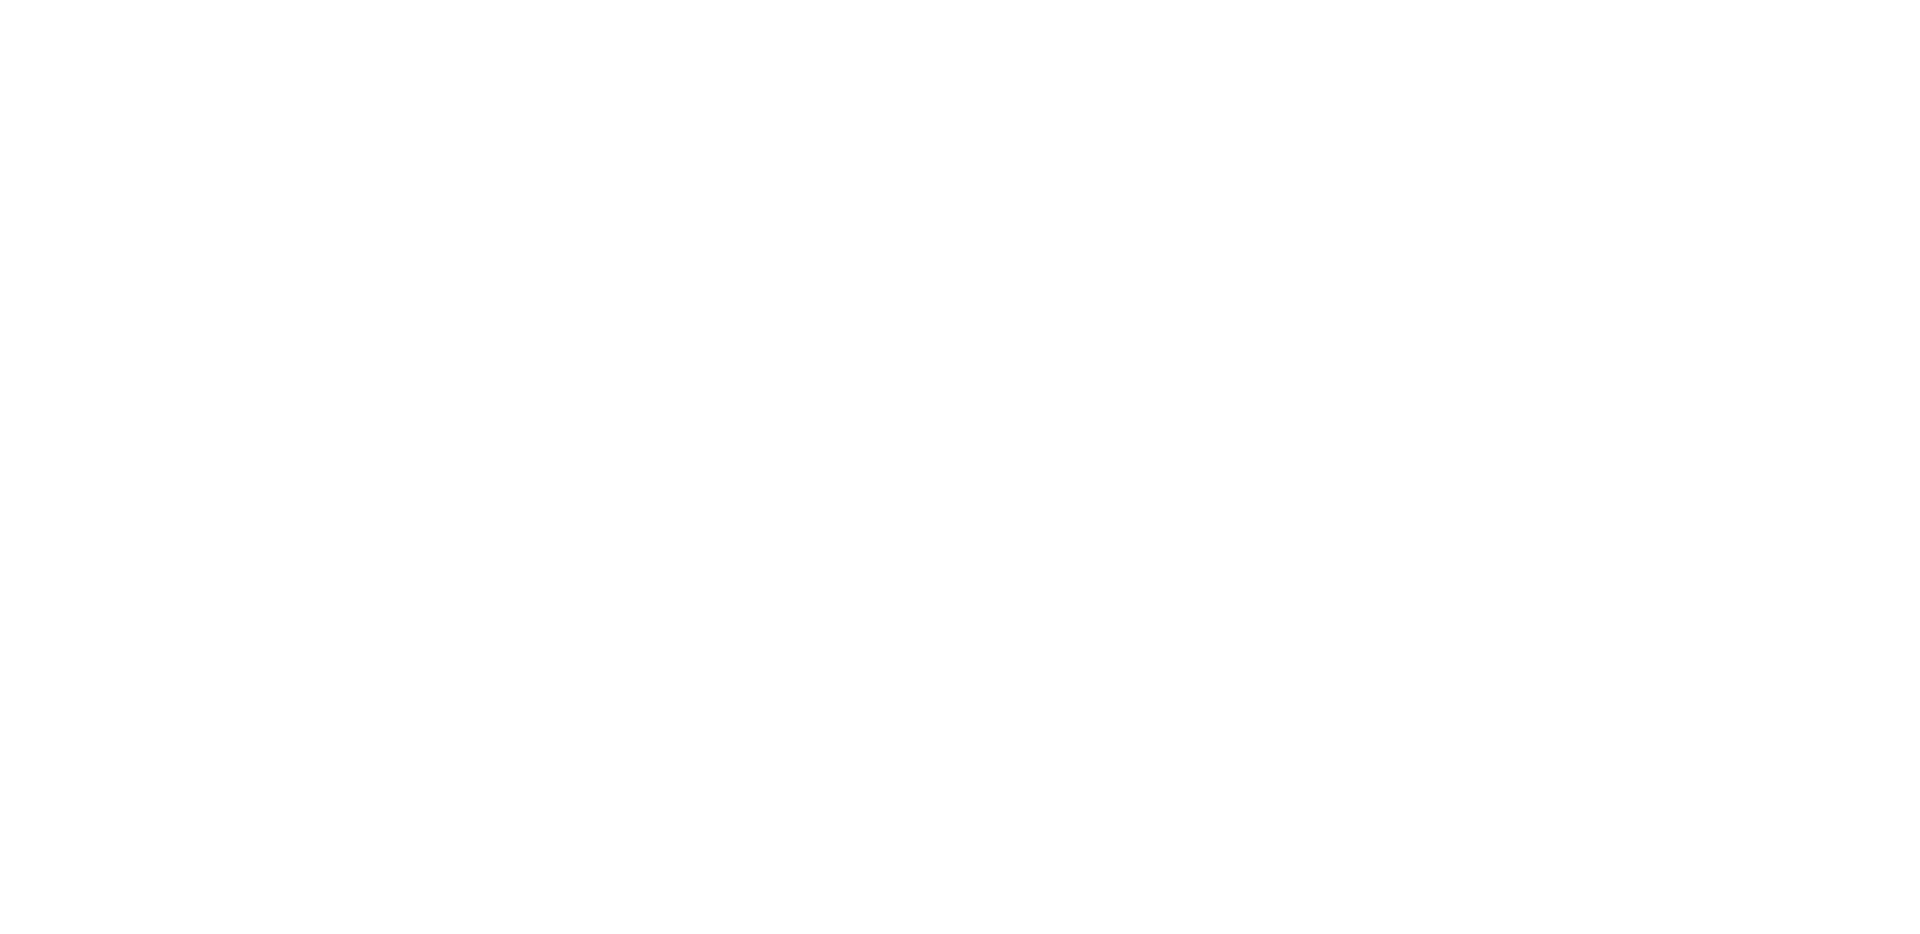 Spil LightningBox-spil på Starcasino.be